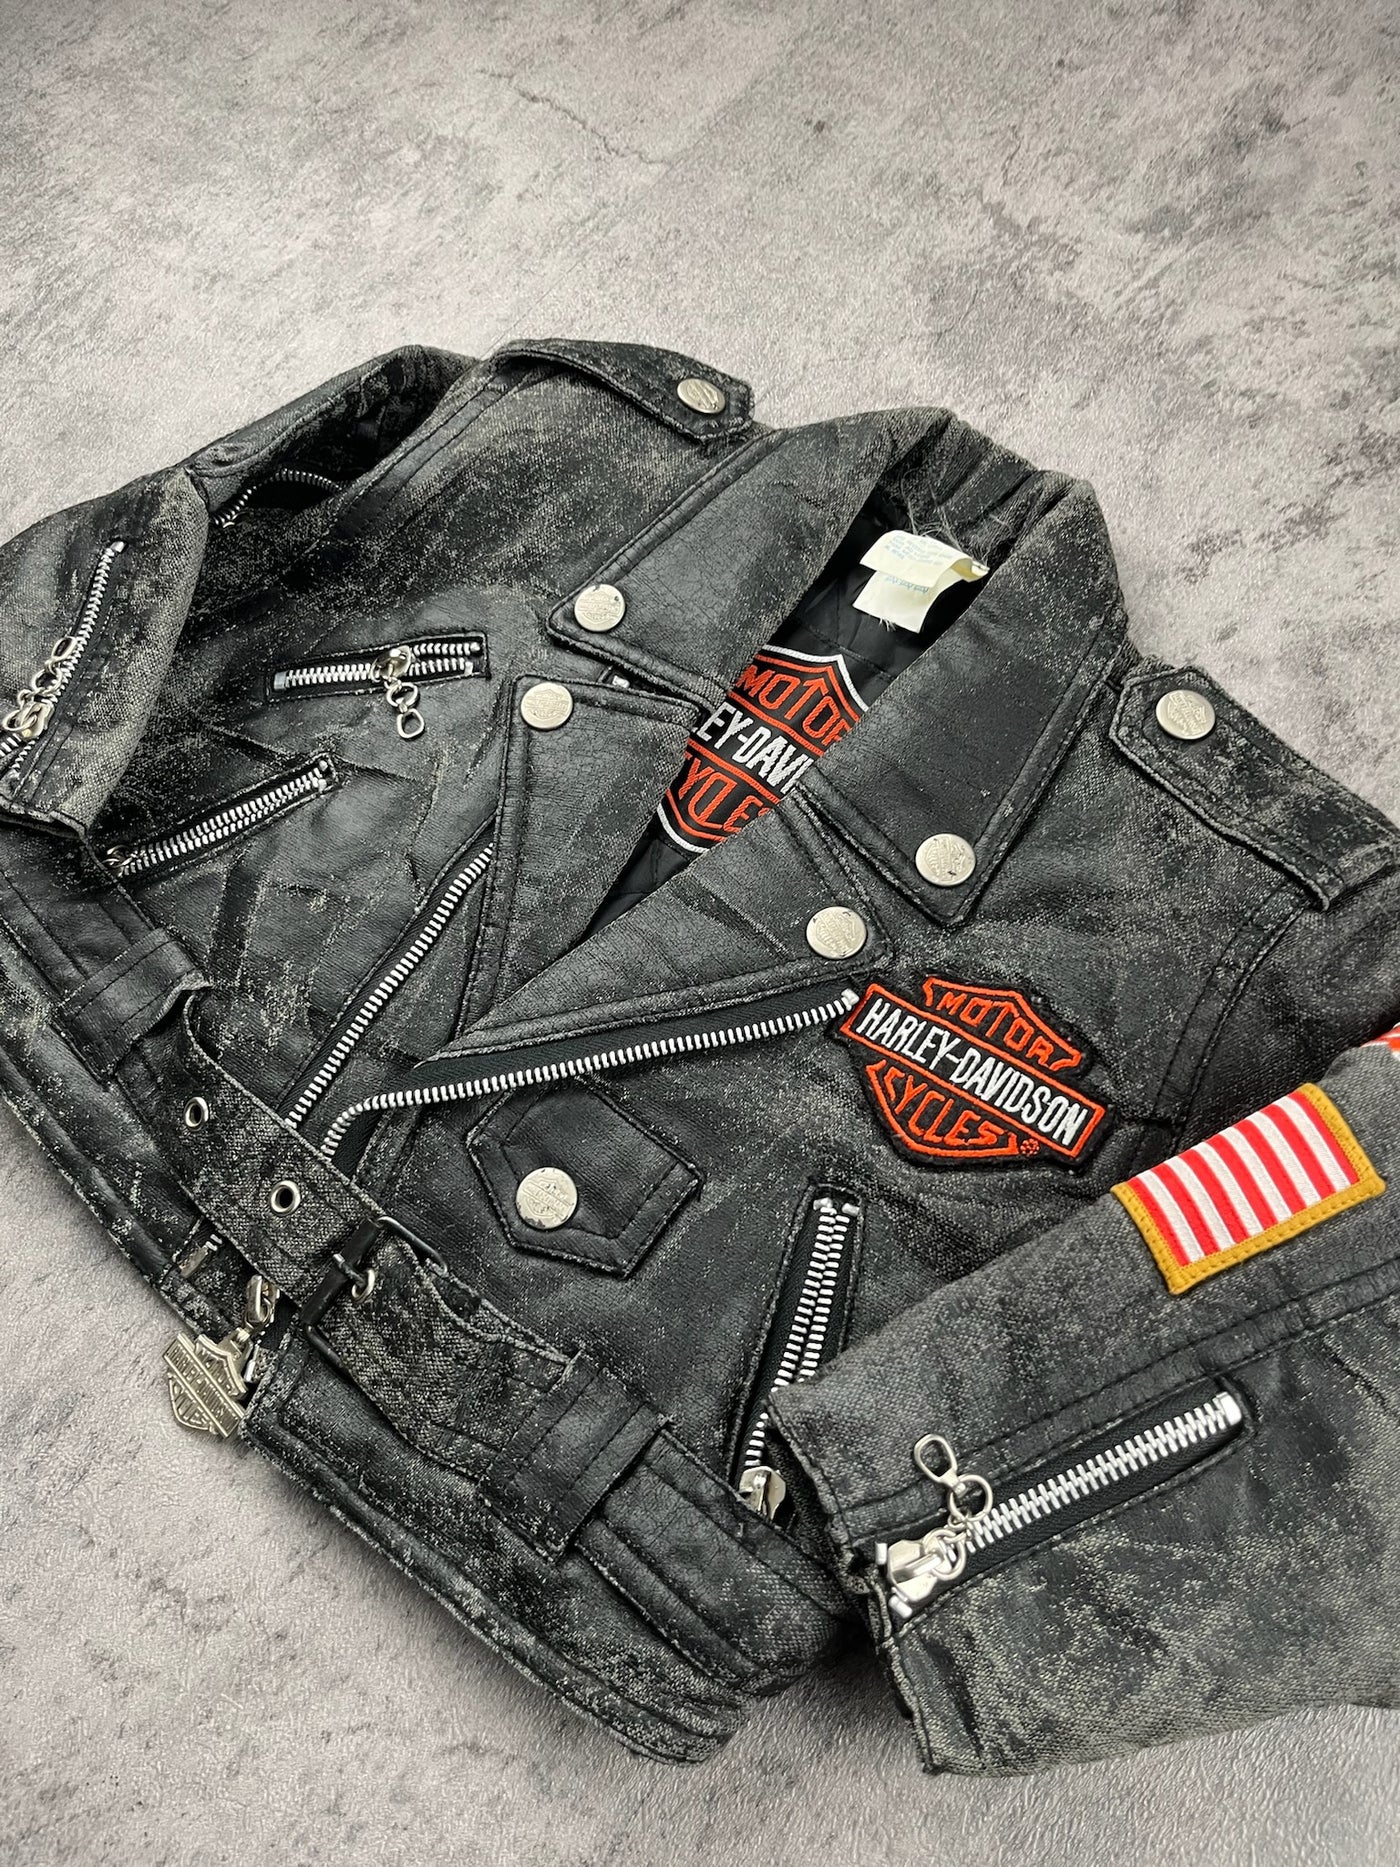 Vintage Harley Davidson Jacket 18-24 Months